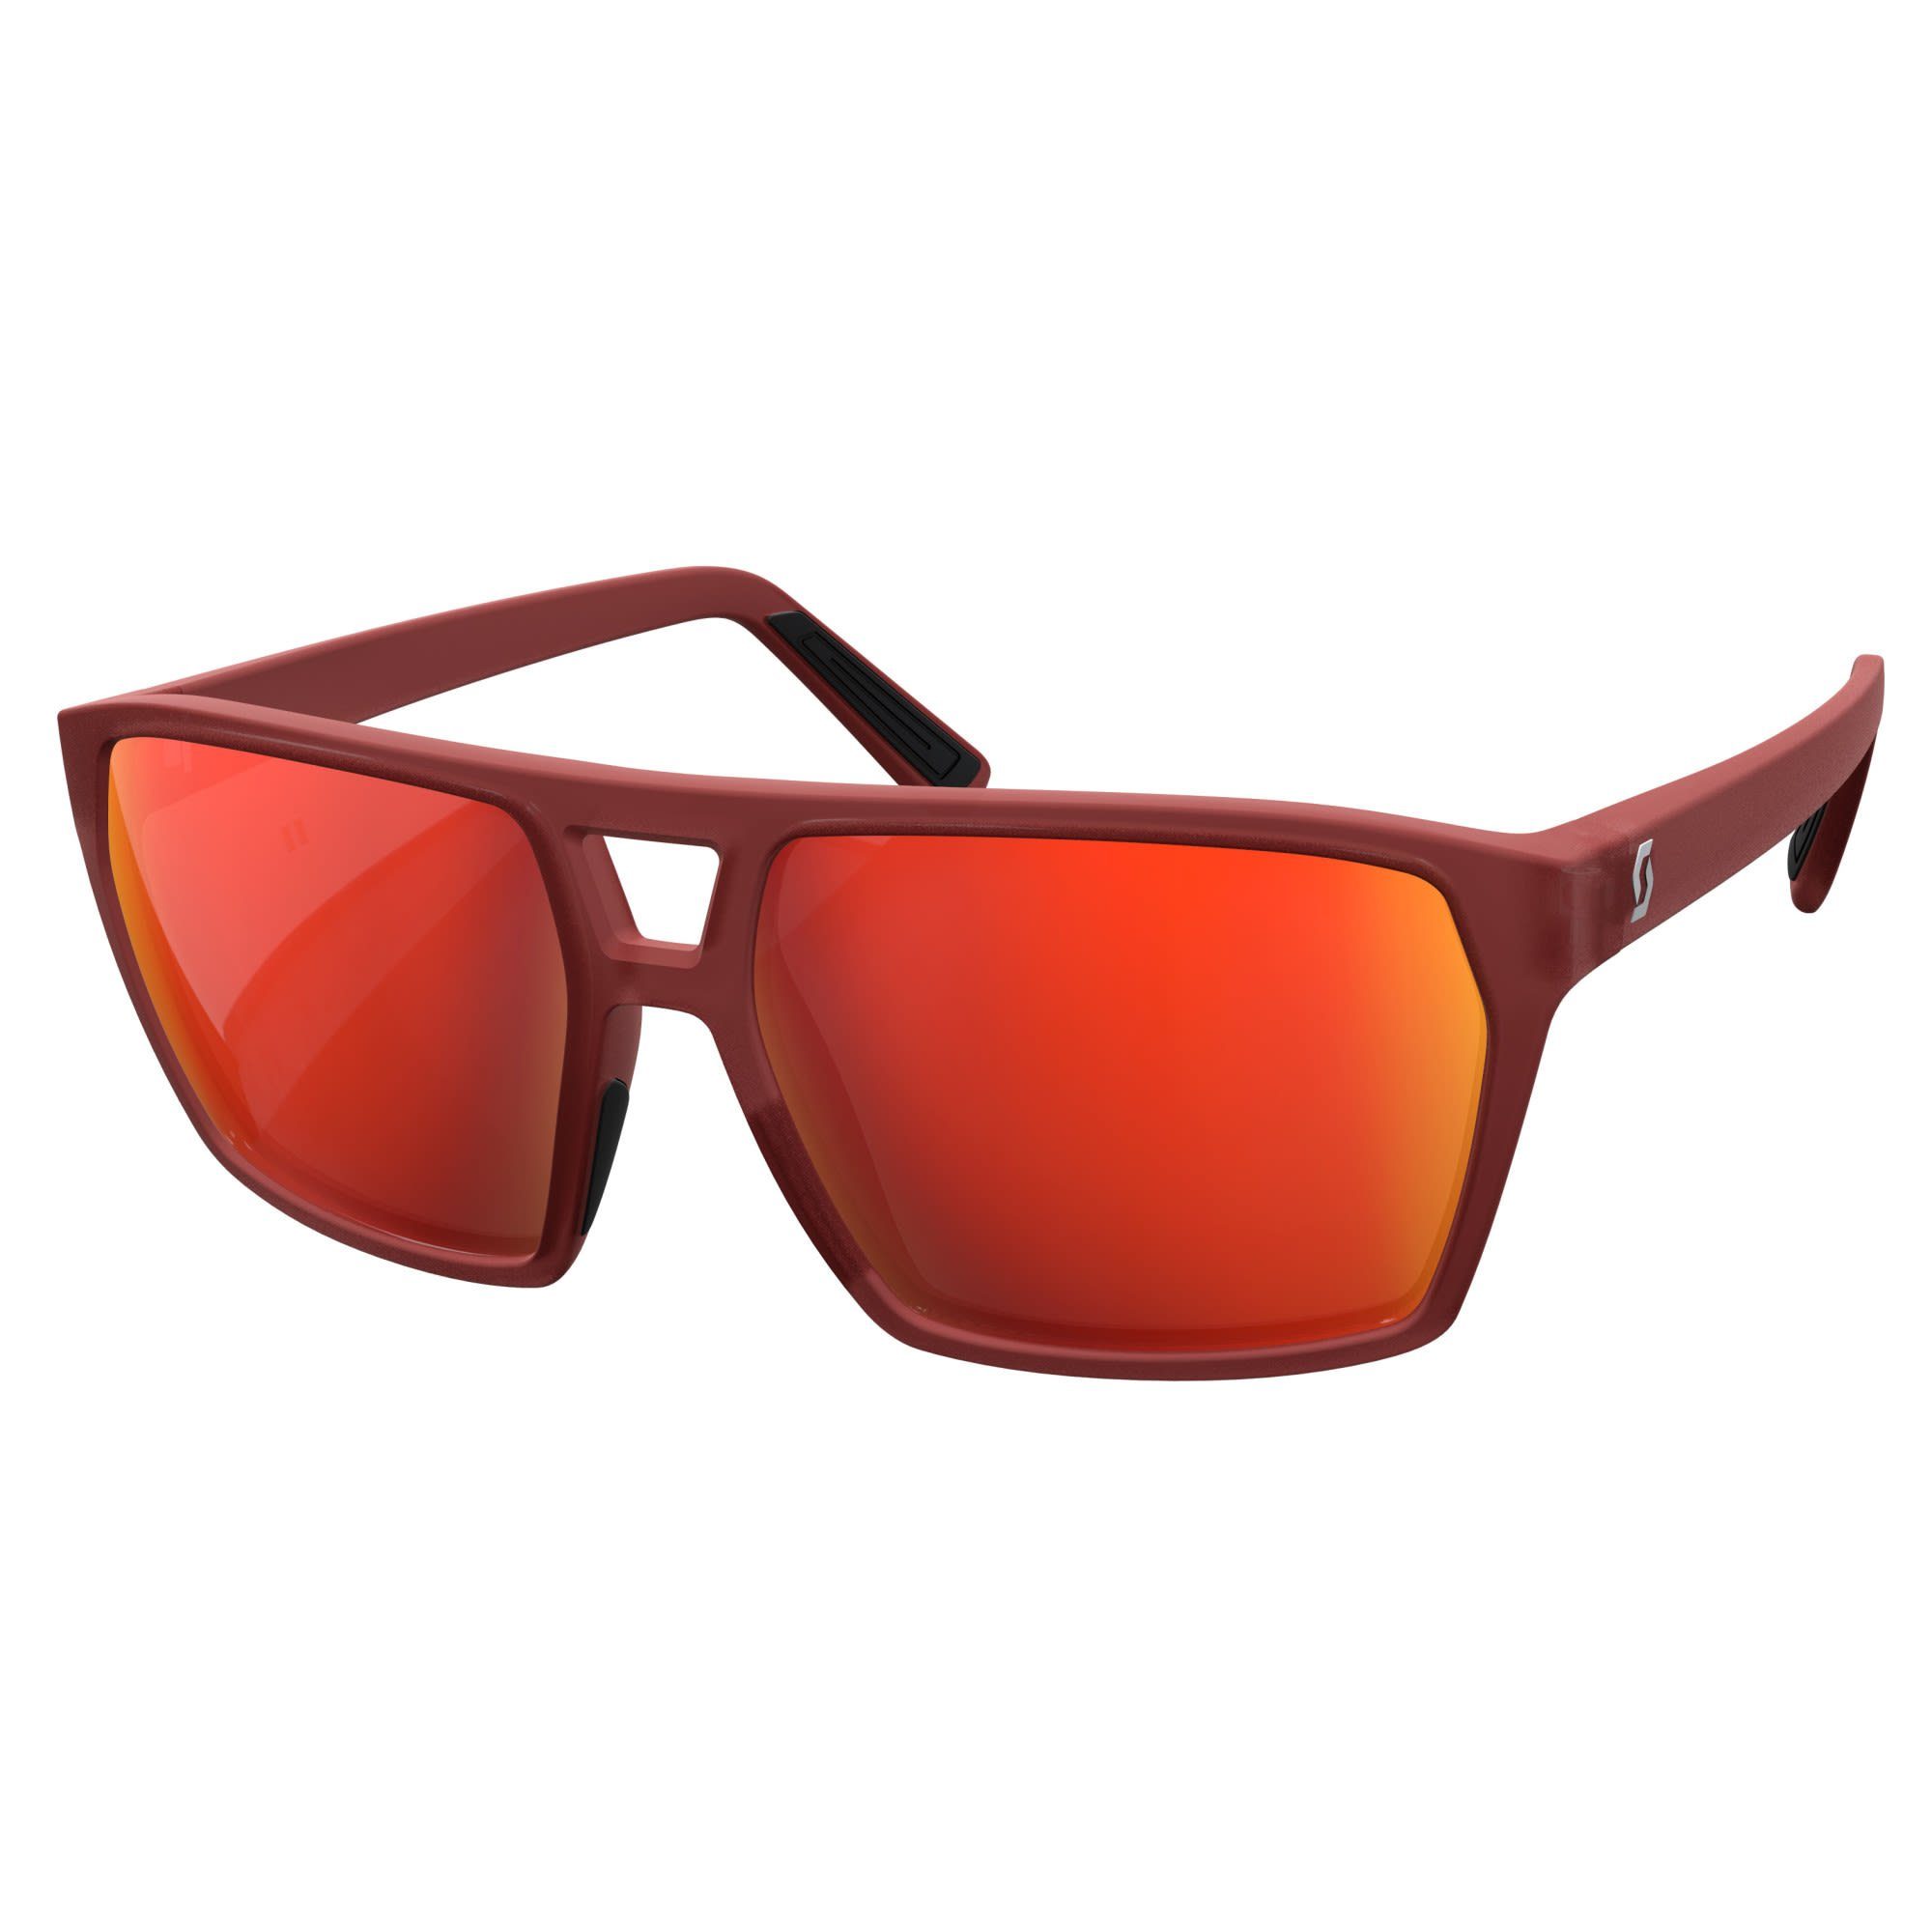 Scott Fahrradbrille Scott Tune Sunglasses Accessoires Chrome - Red Red Merlot